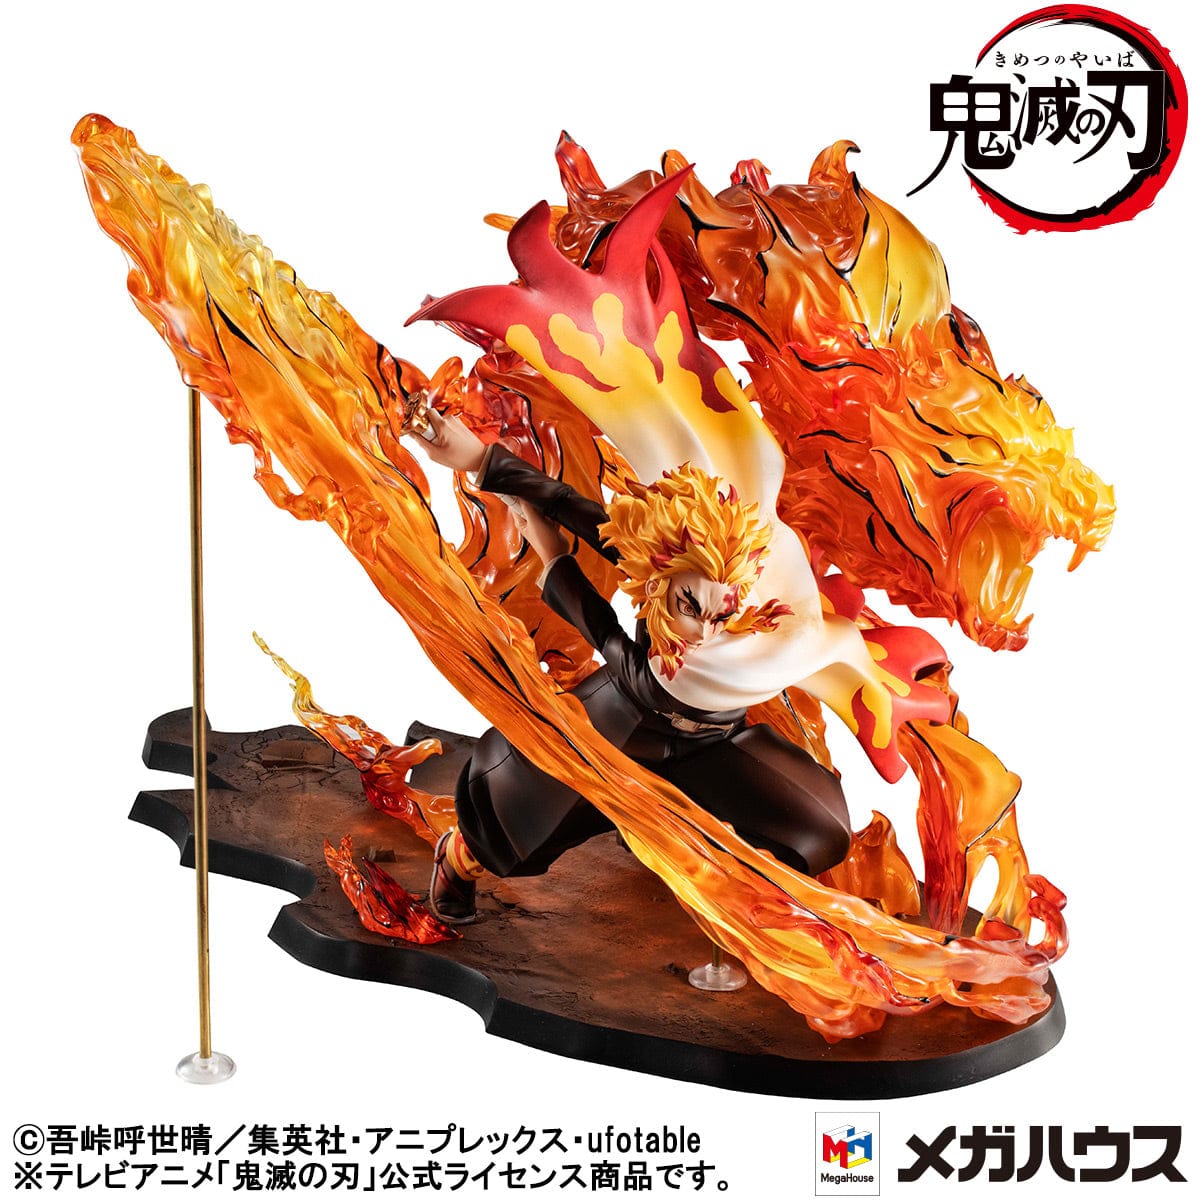 MEGAHOUSE Precious G.E.M. Series: Demon Slayer: Kimetsu no Yaiba - Kyojuro Rengoku Fifth Form: Flame Tiger